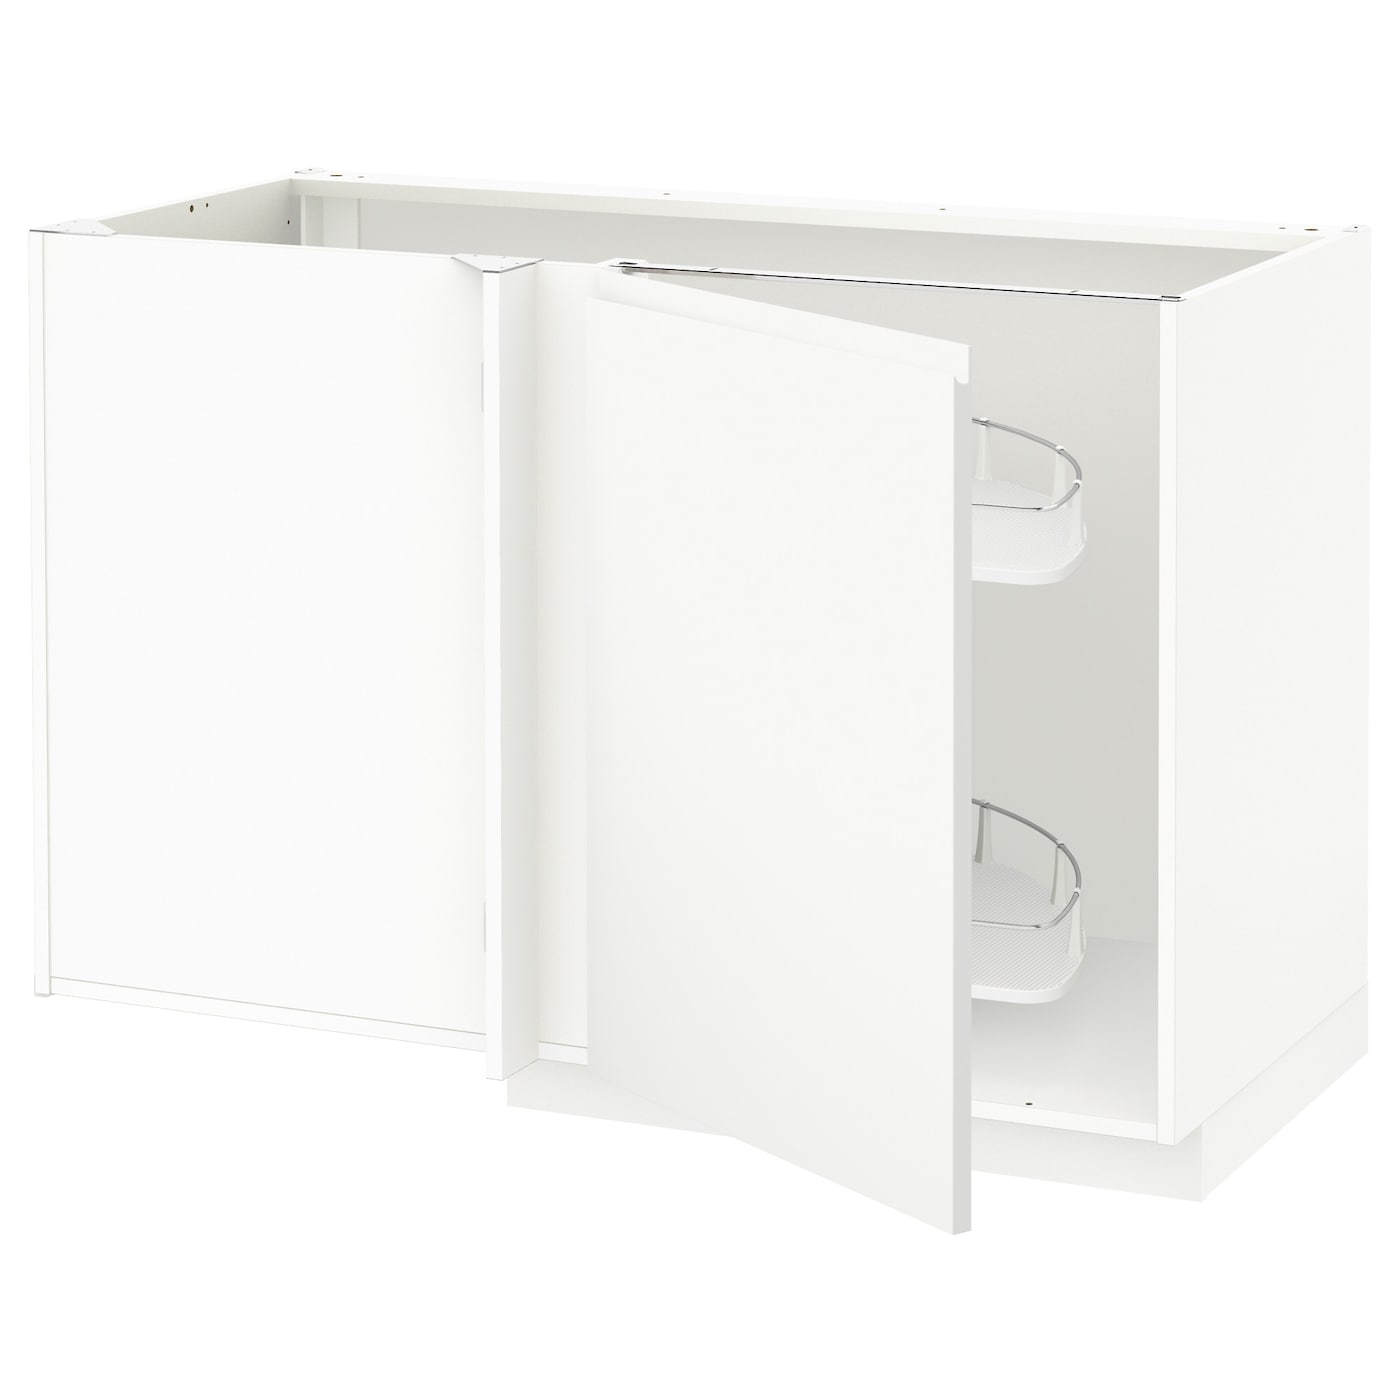 Напольный шкаф  - IKEA METOD, 88x67,5x127,5см, белый, МЕТОД ИКЕА